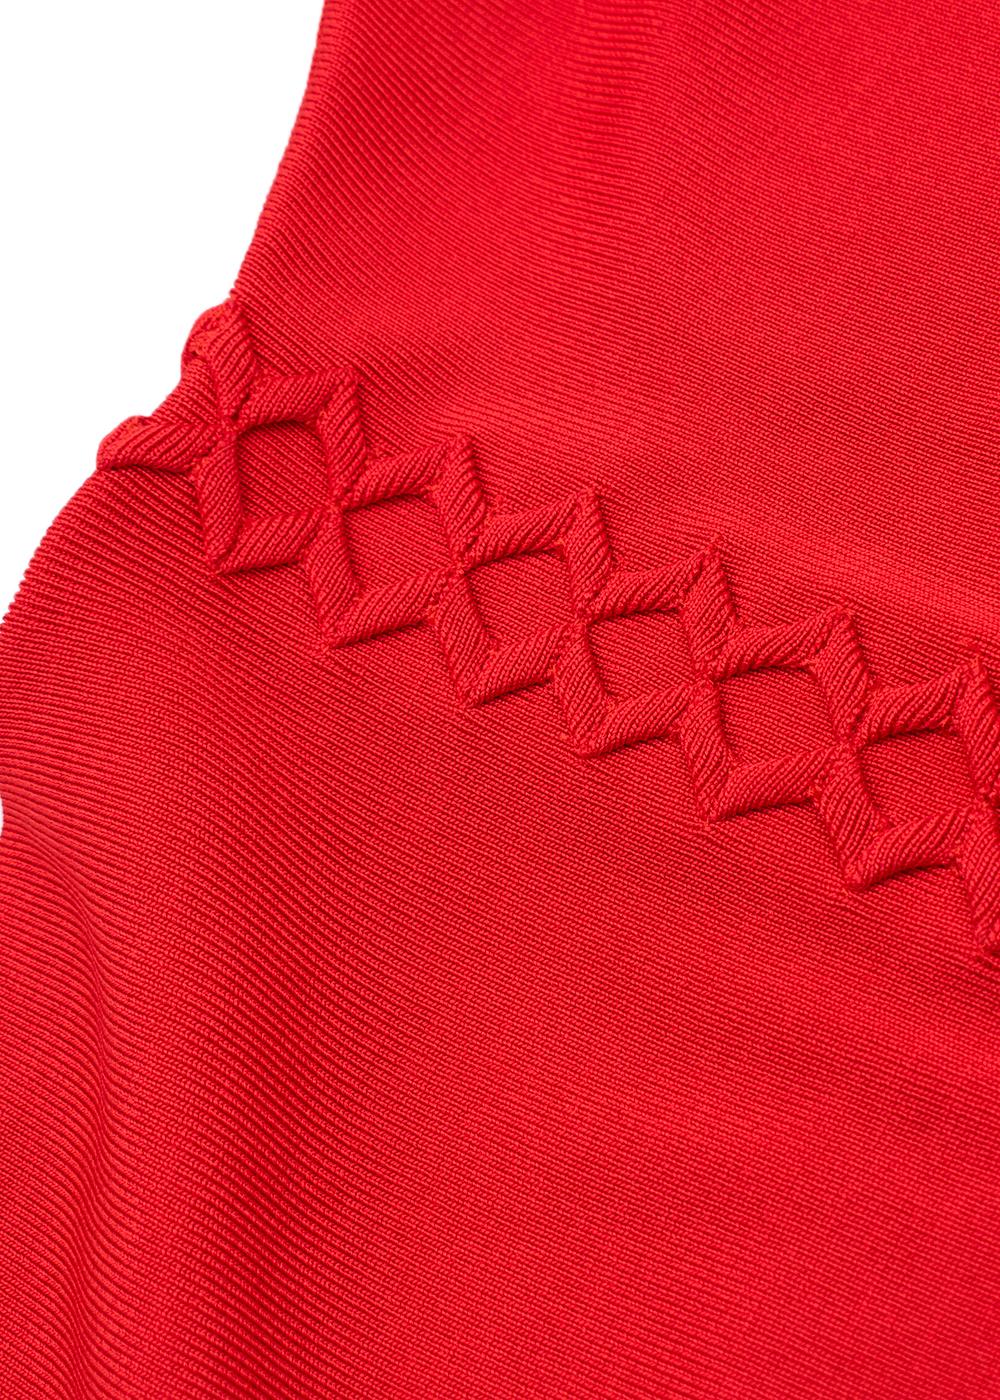 Herve Leger Red Zig-Zag Trim Short Sleeve Bandage Dress For Sale 1